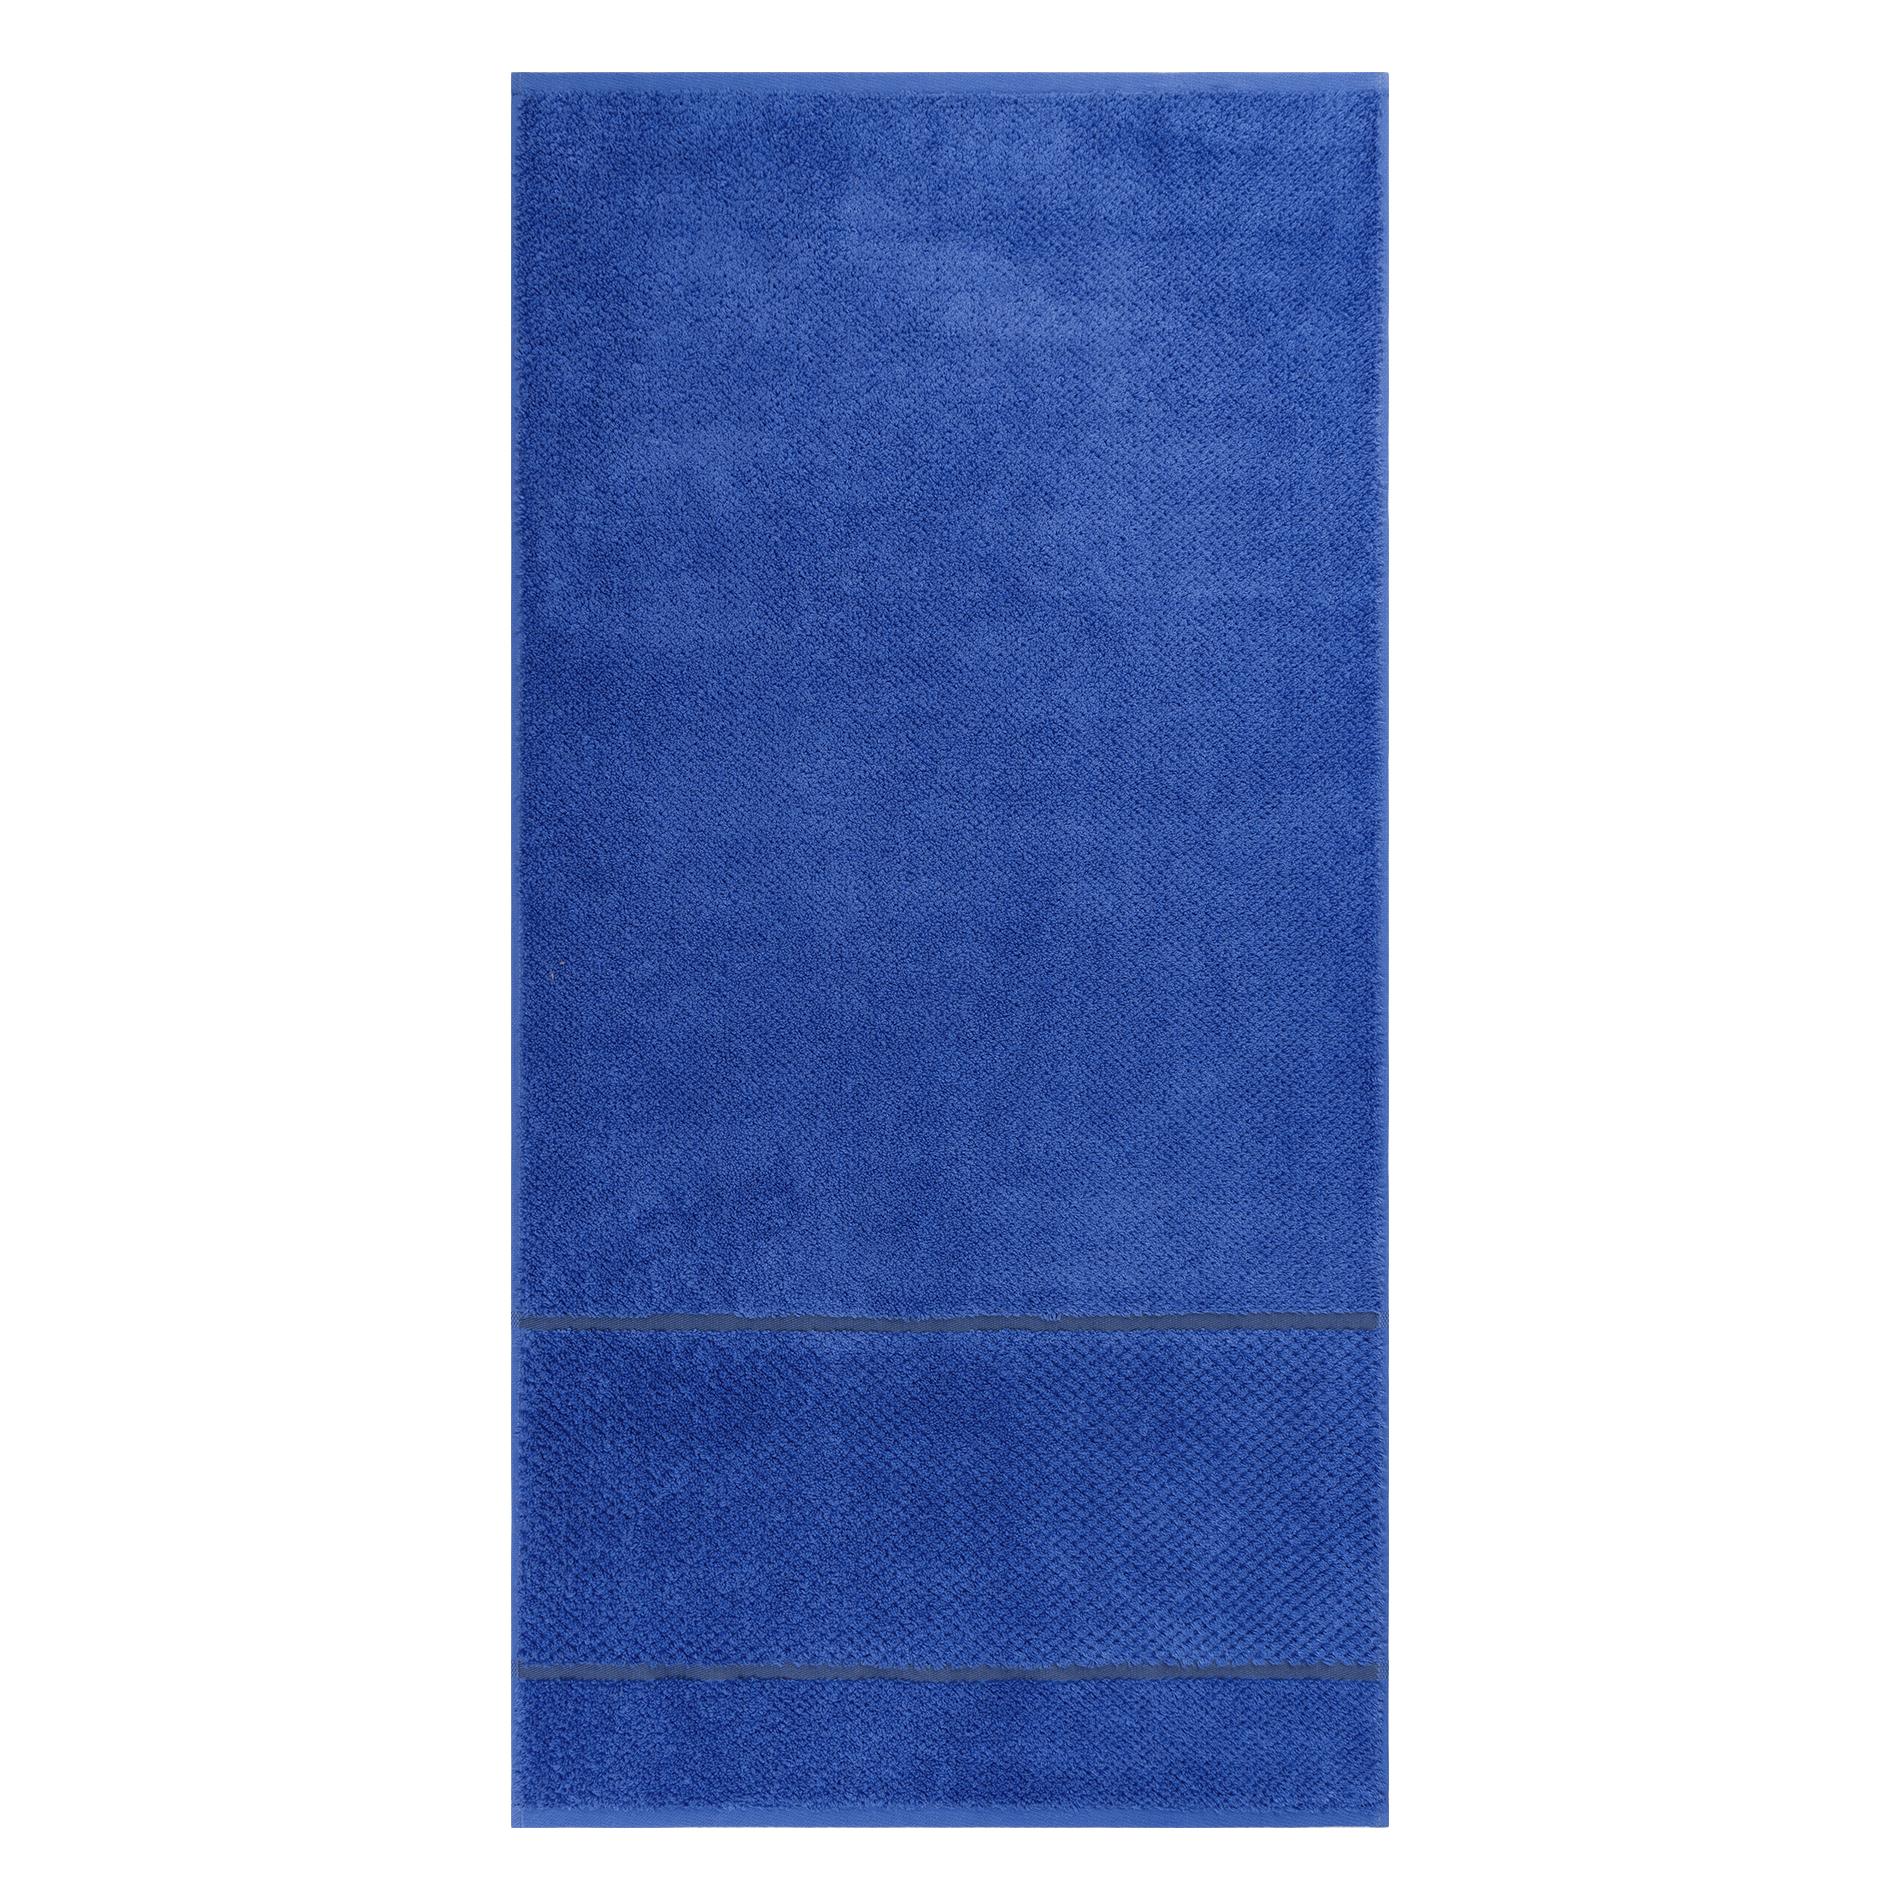 Махровое полотенце Cleanelly Fiordaliso синее 50х100 см полотенце махровое cleanelly порфидо 50х100 бежевый